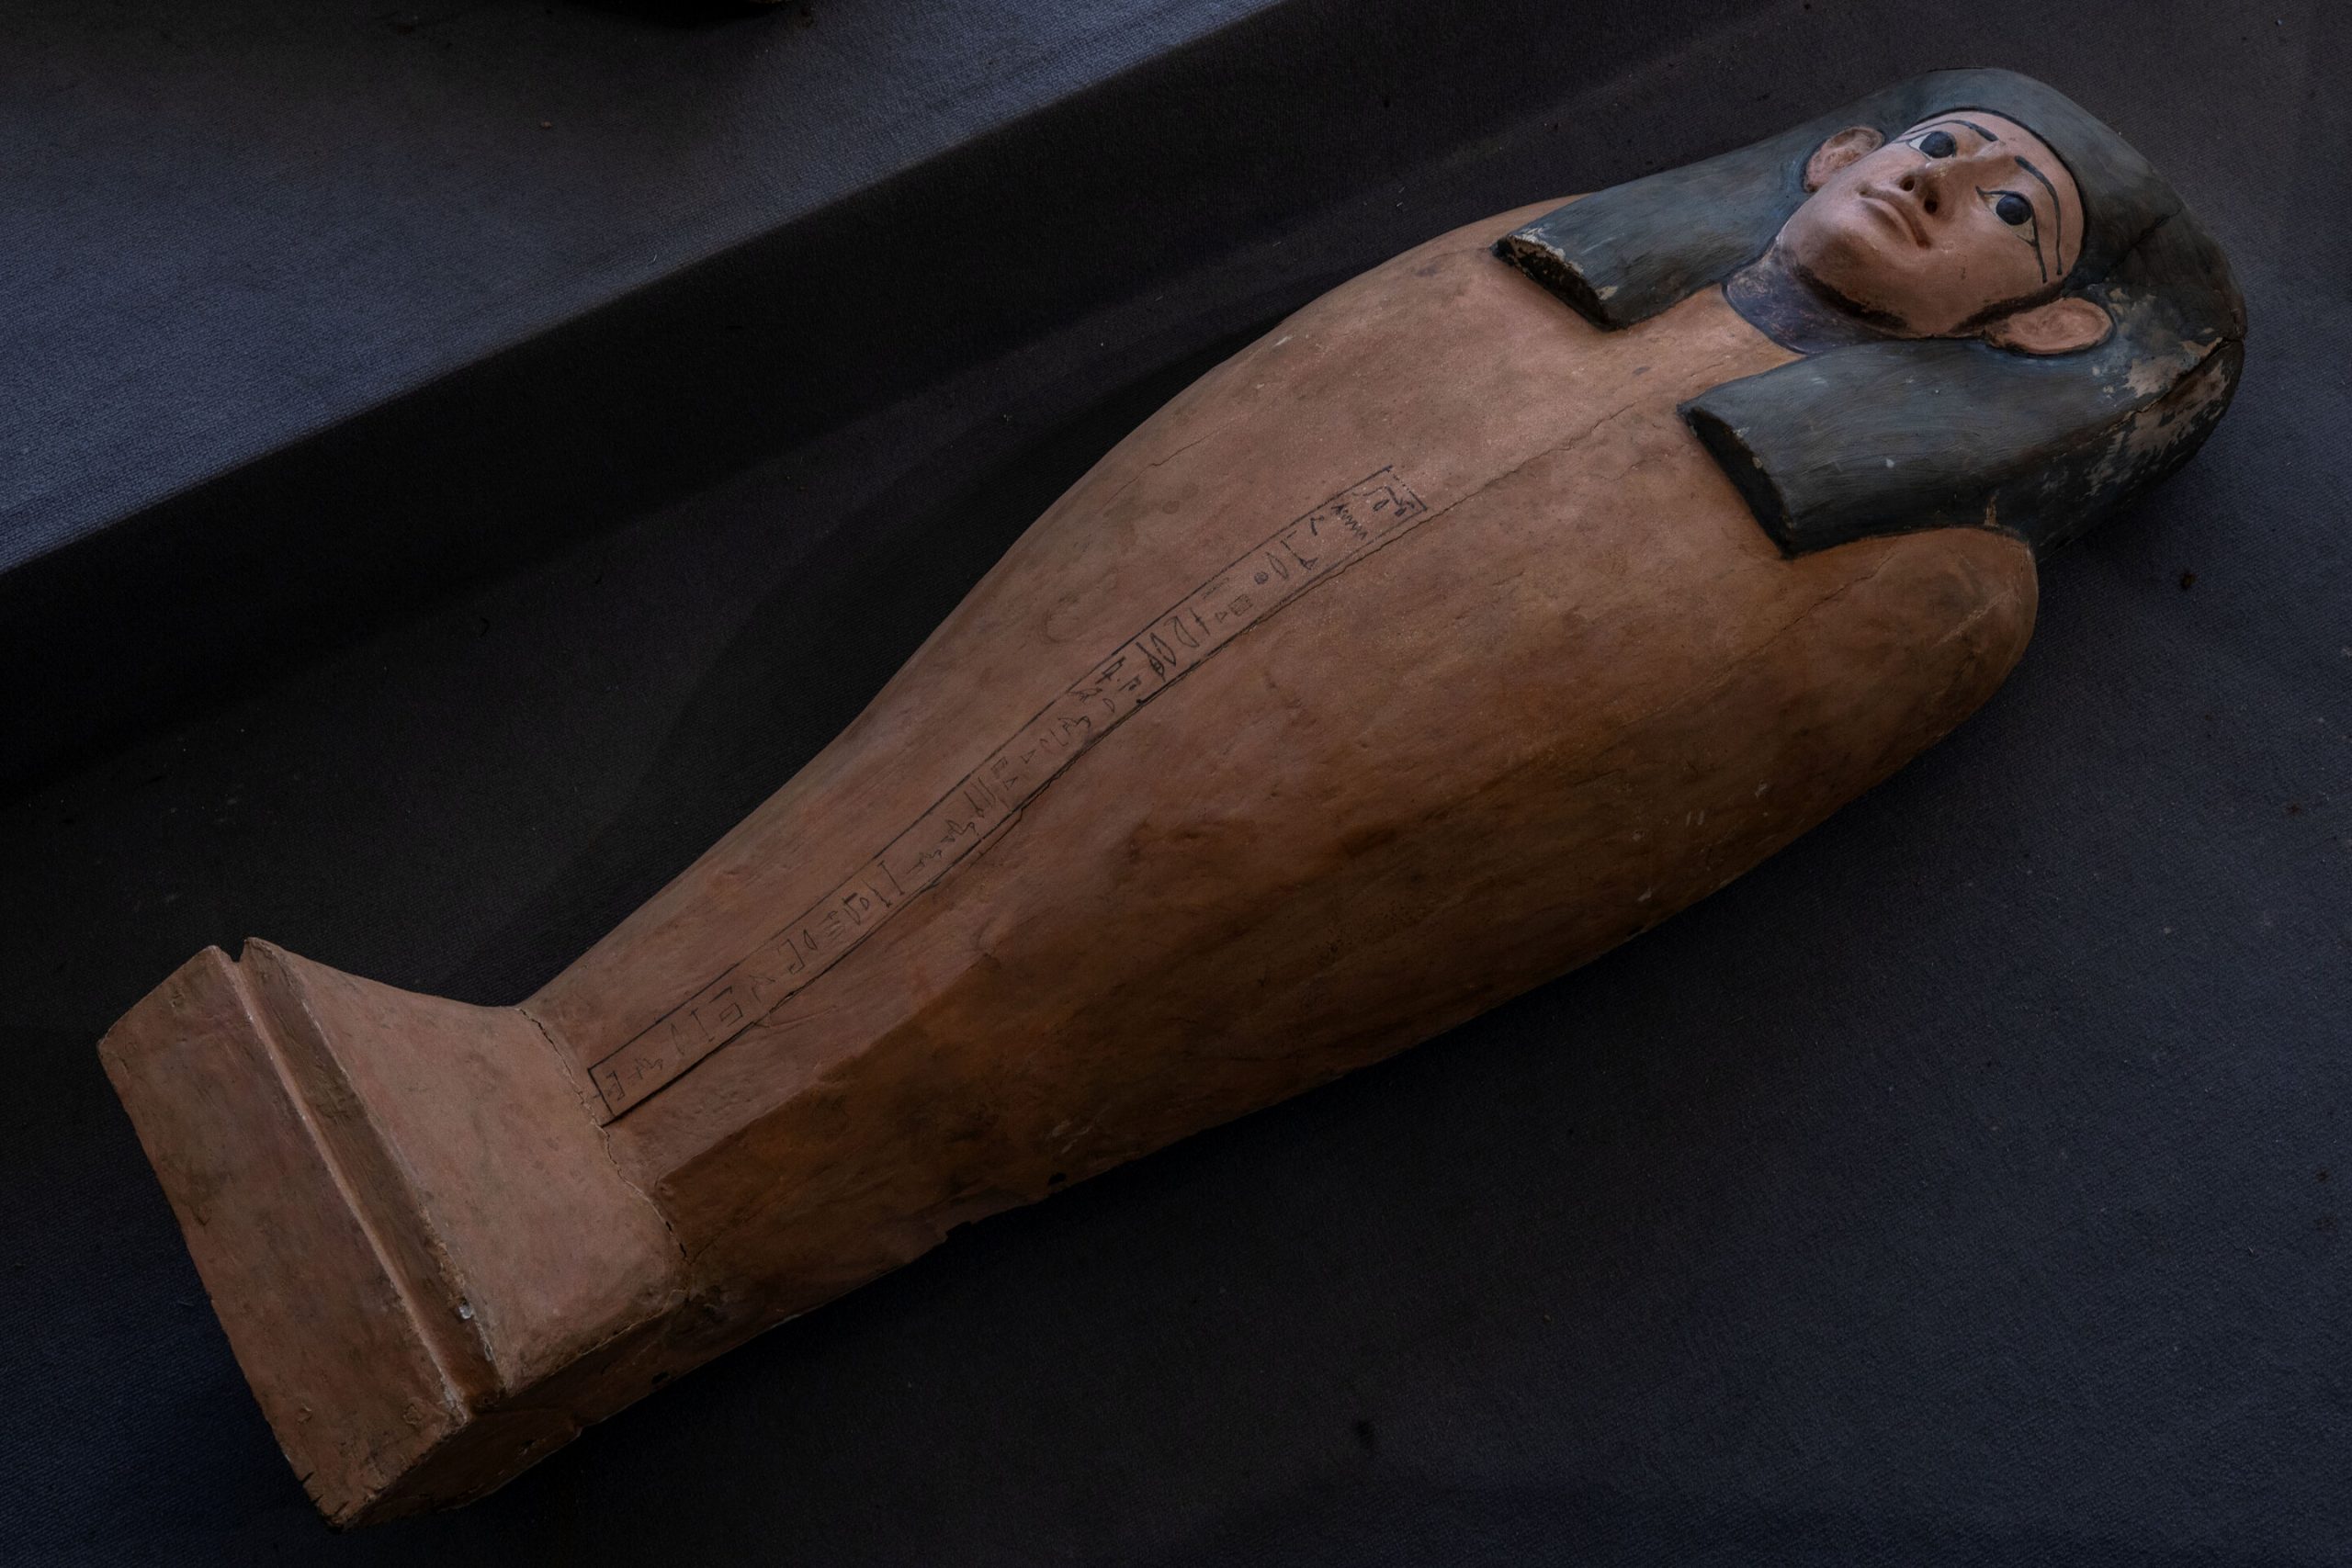 В Египте обнаружили 100 древних саркофагов с мумиями